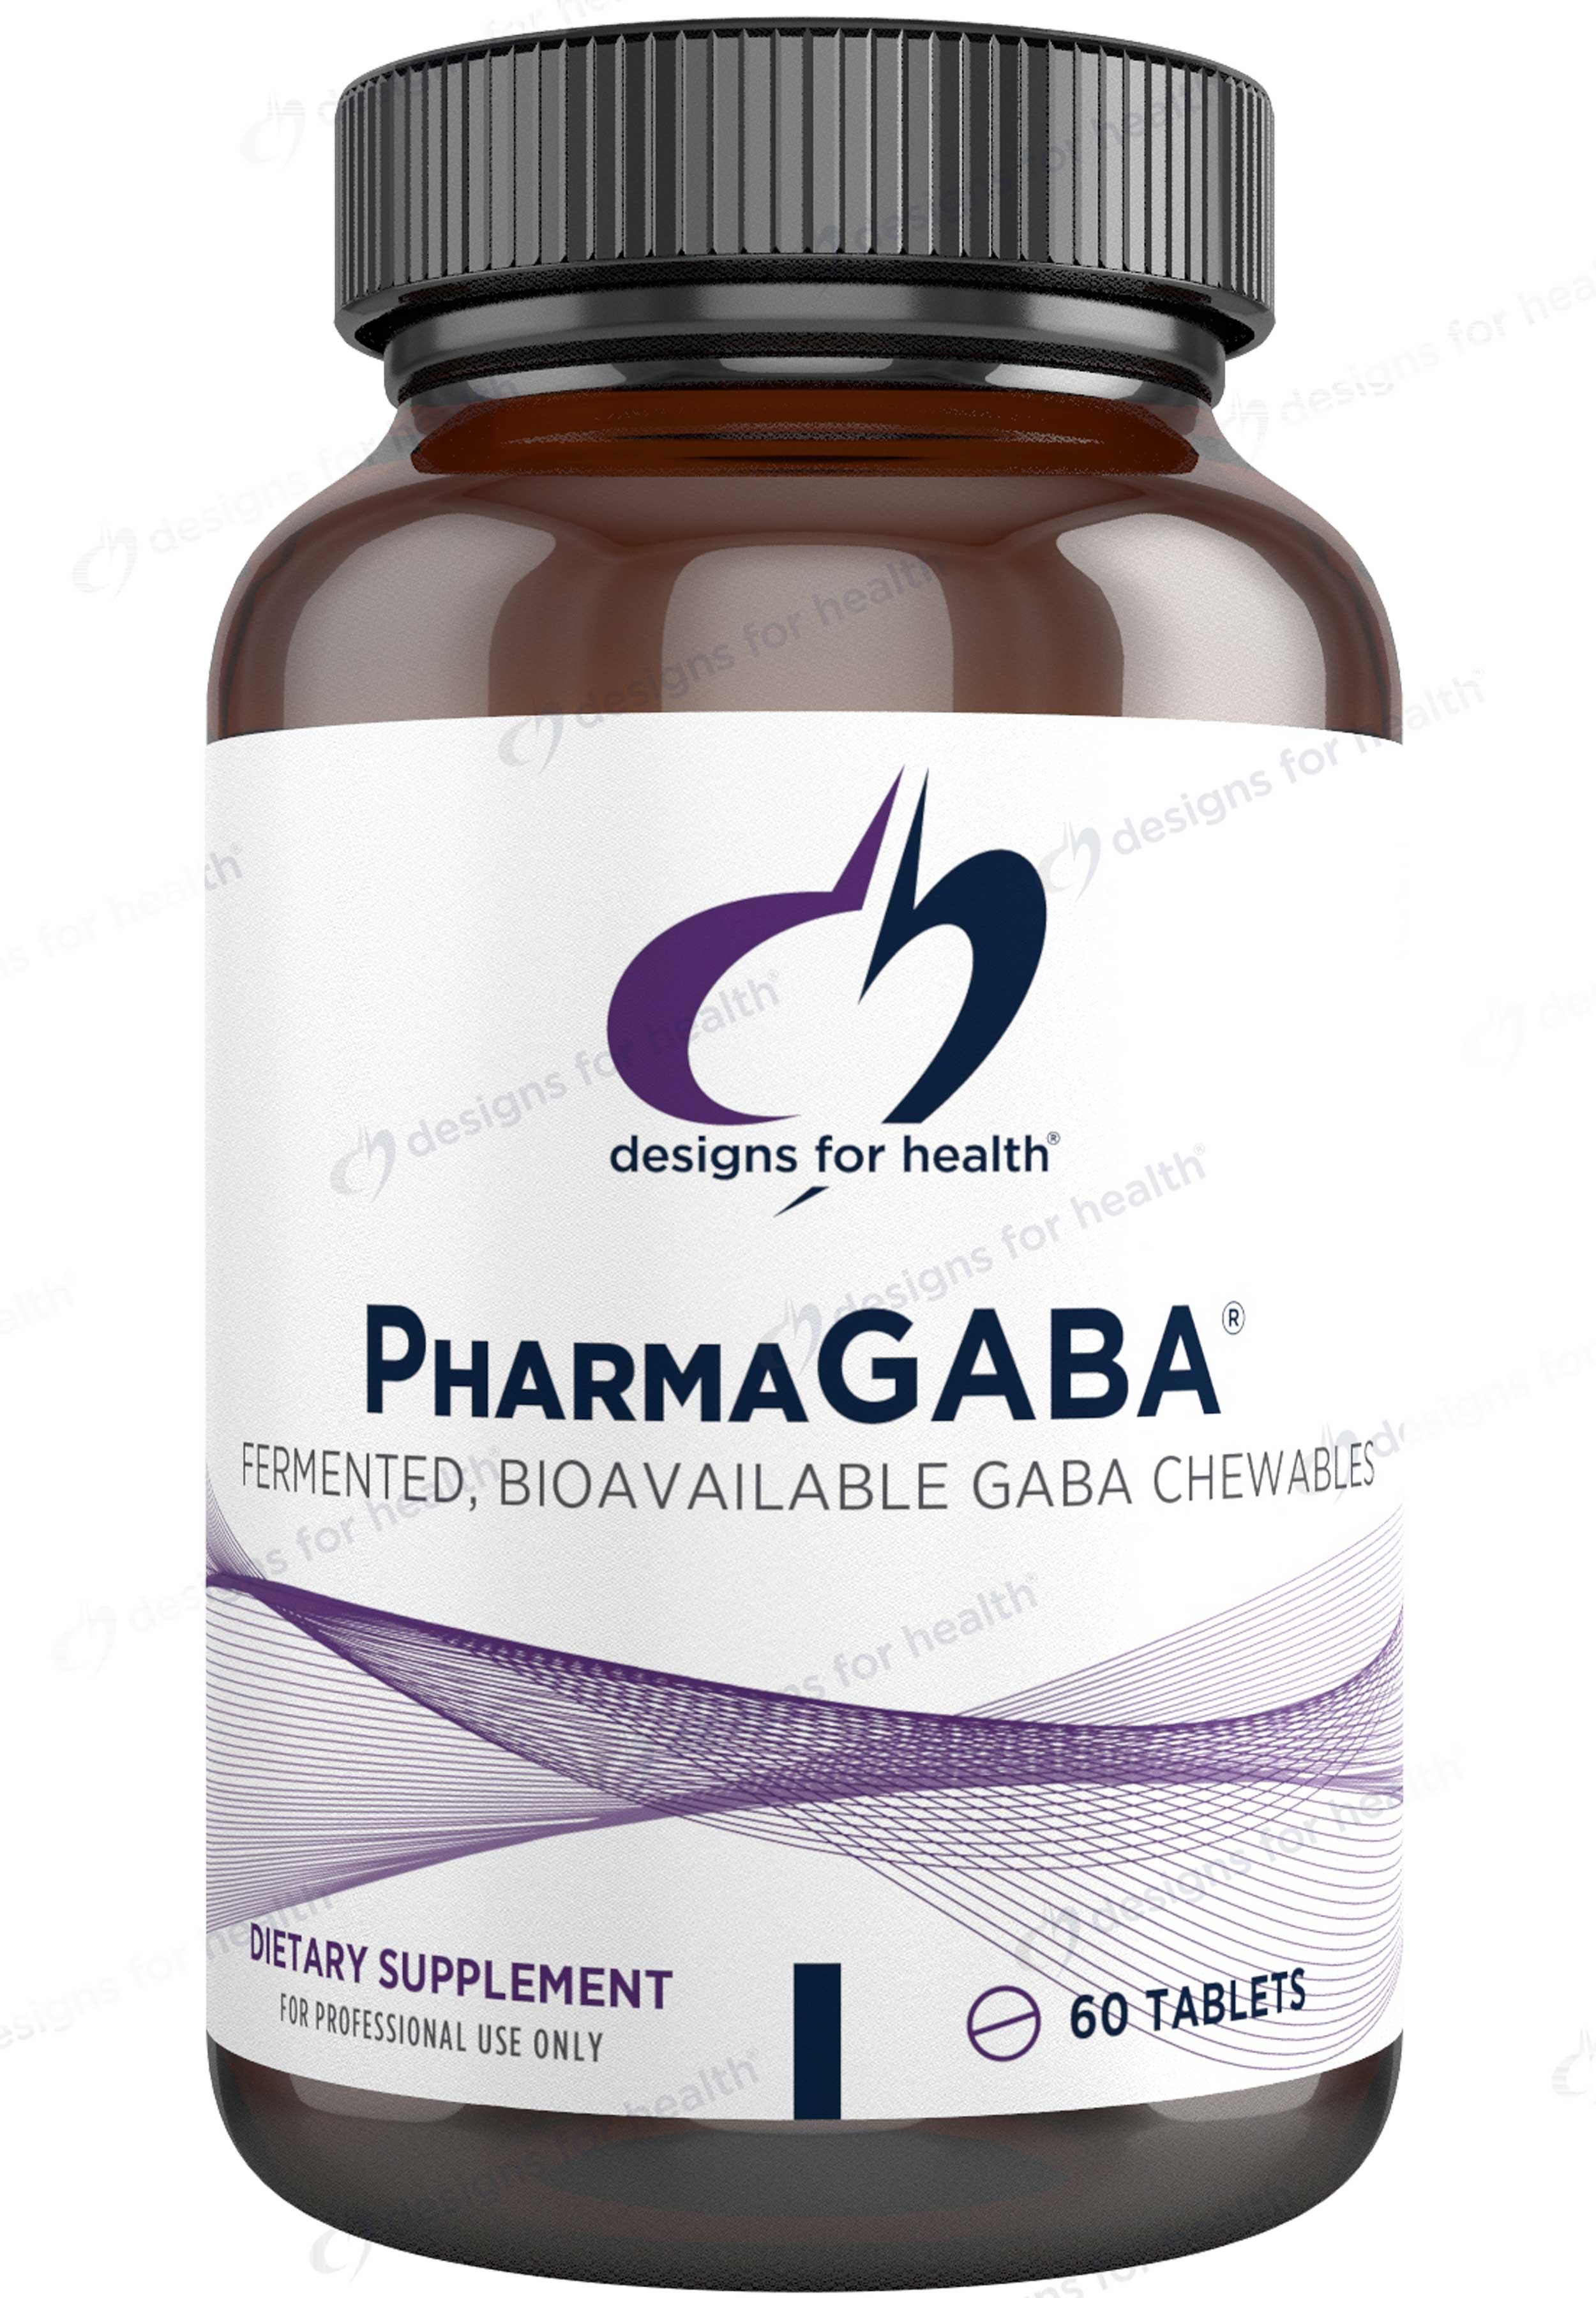 Designs for Health PharmaGABA